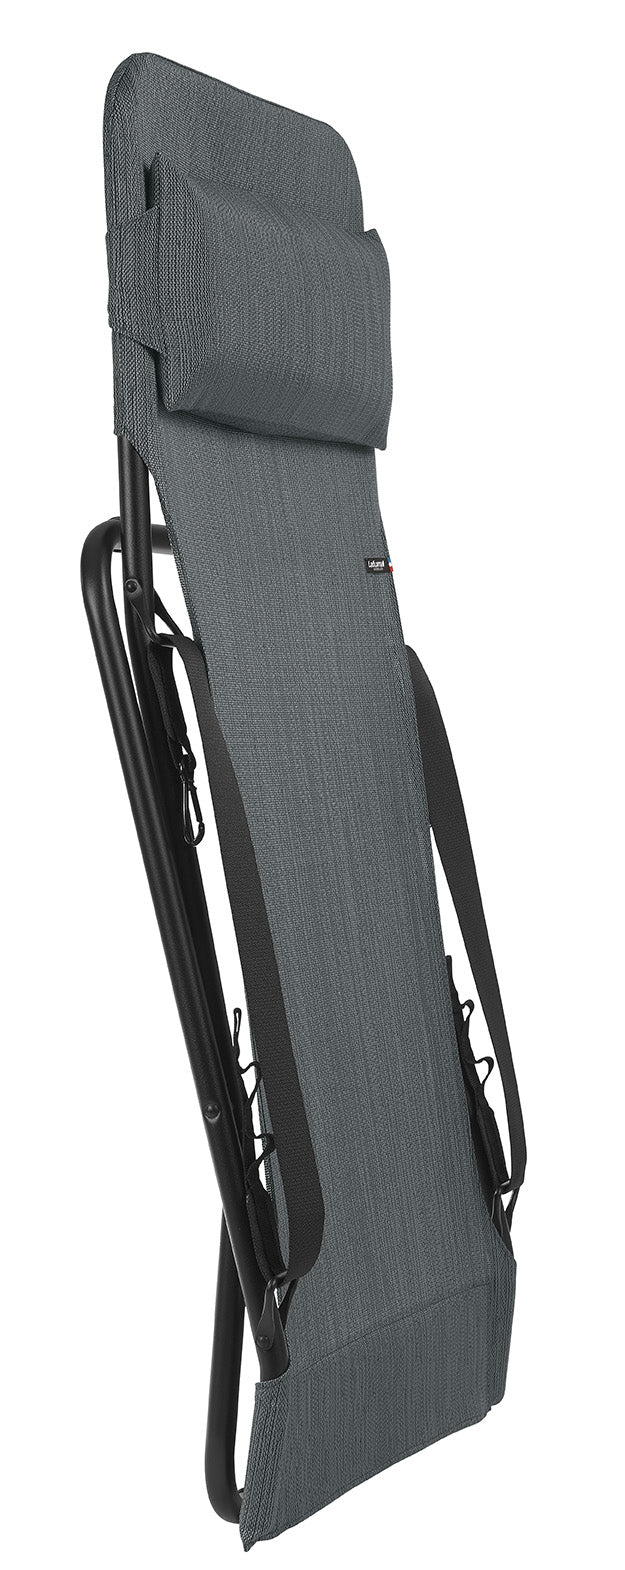 Premium Graphite European Folding Beach Chair